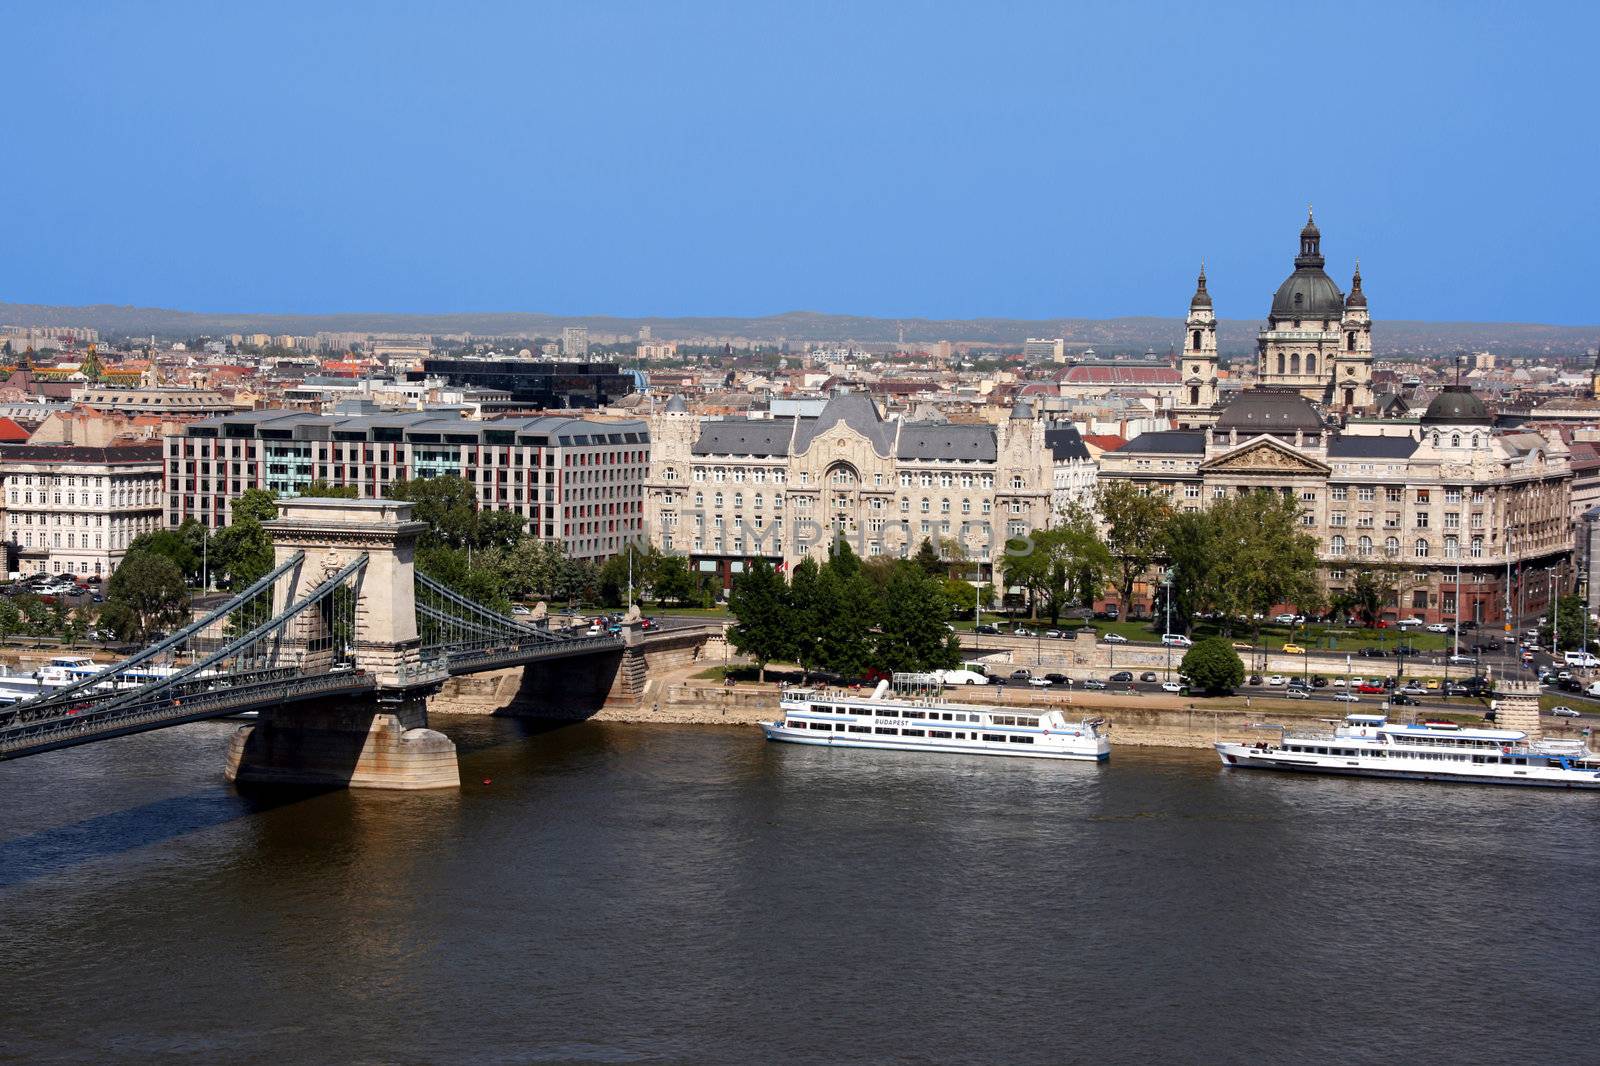 Danube, Chain Bridge and Budapest view by tupungato